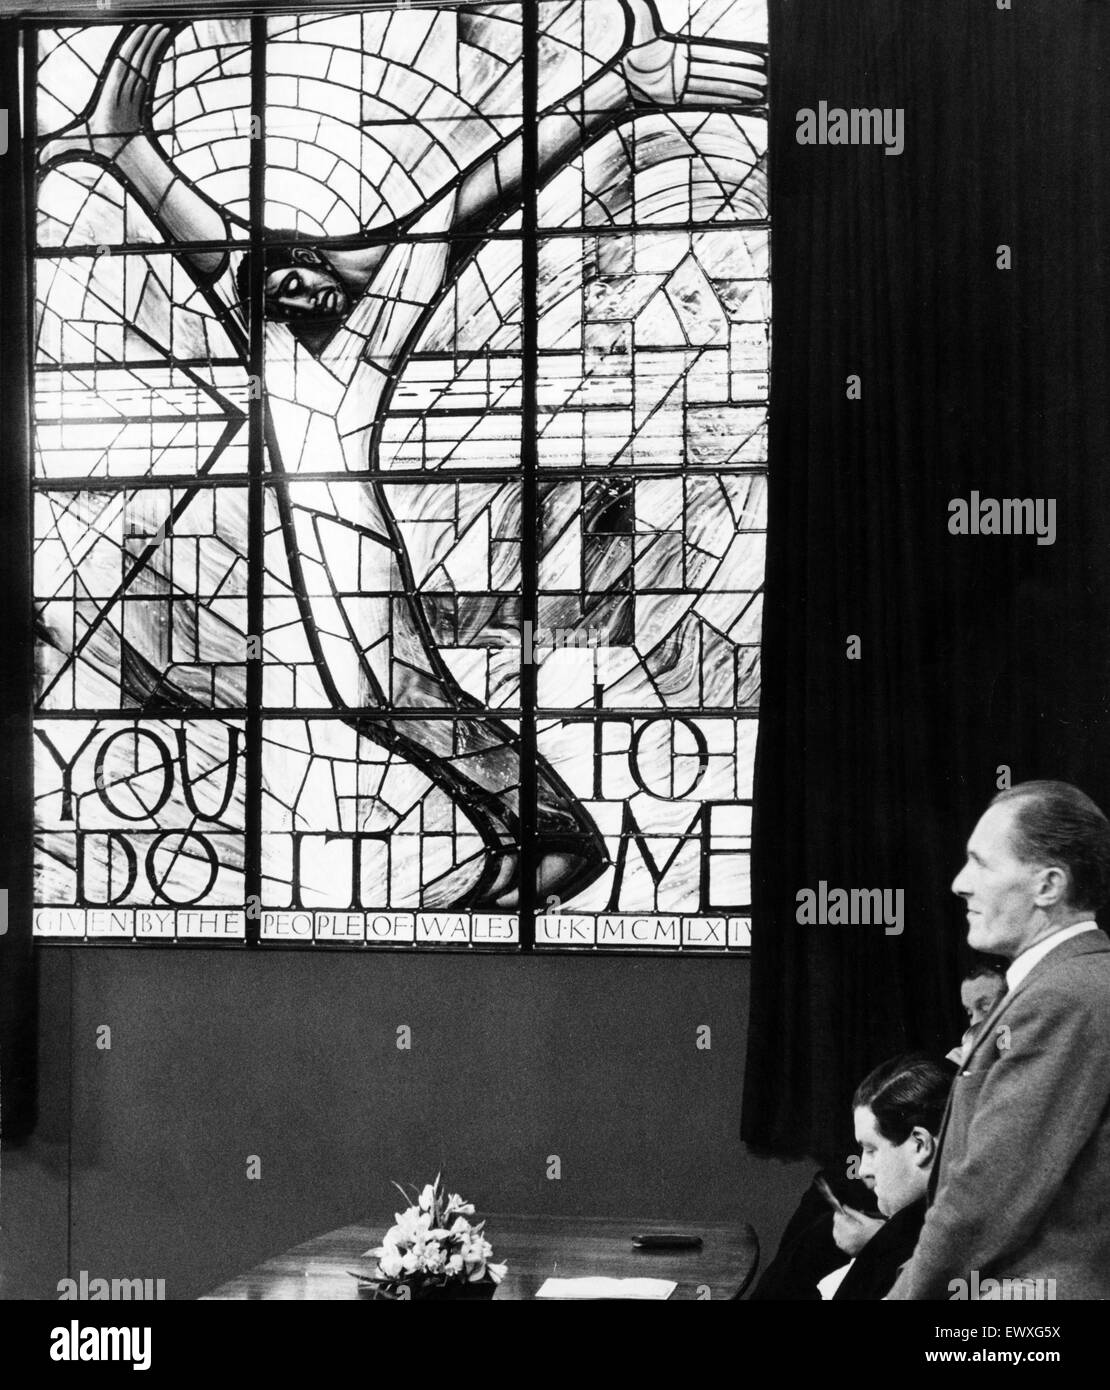 La ventana de Gales para Alabama, Ceremonia, Thomson House, Cardiff, Gales, jueves 4 de febrero de 1965. Presentado por el señor alcalde de Cardiff, Alderman WJ Hartland JP. La vidriera, diseñado por John Petts, fue financiado por donaciones de la Foto de stock